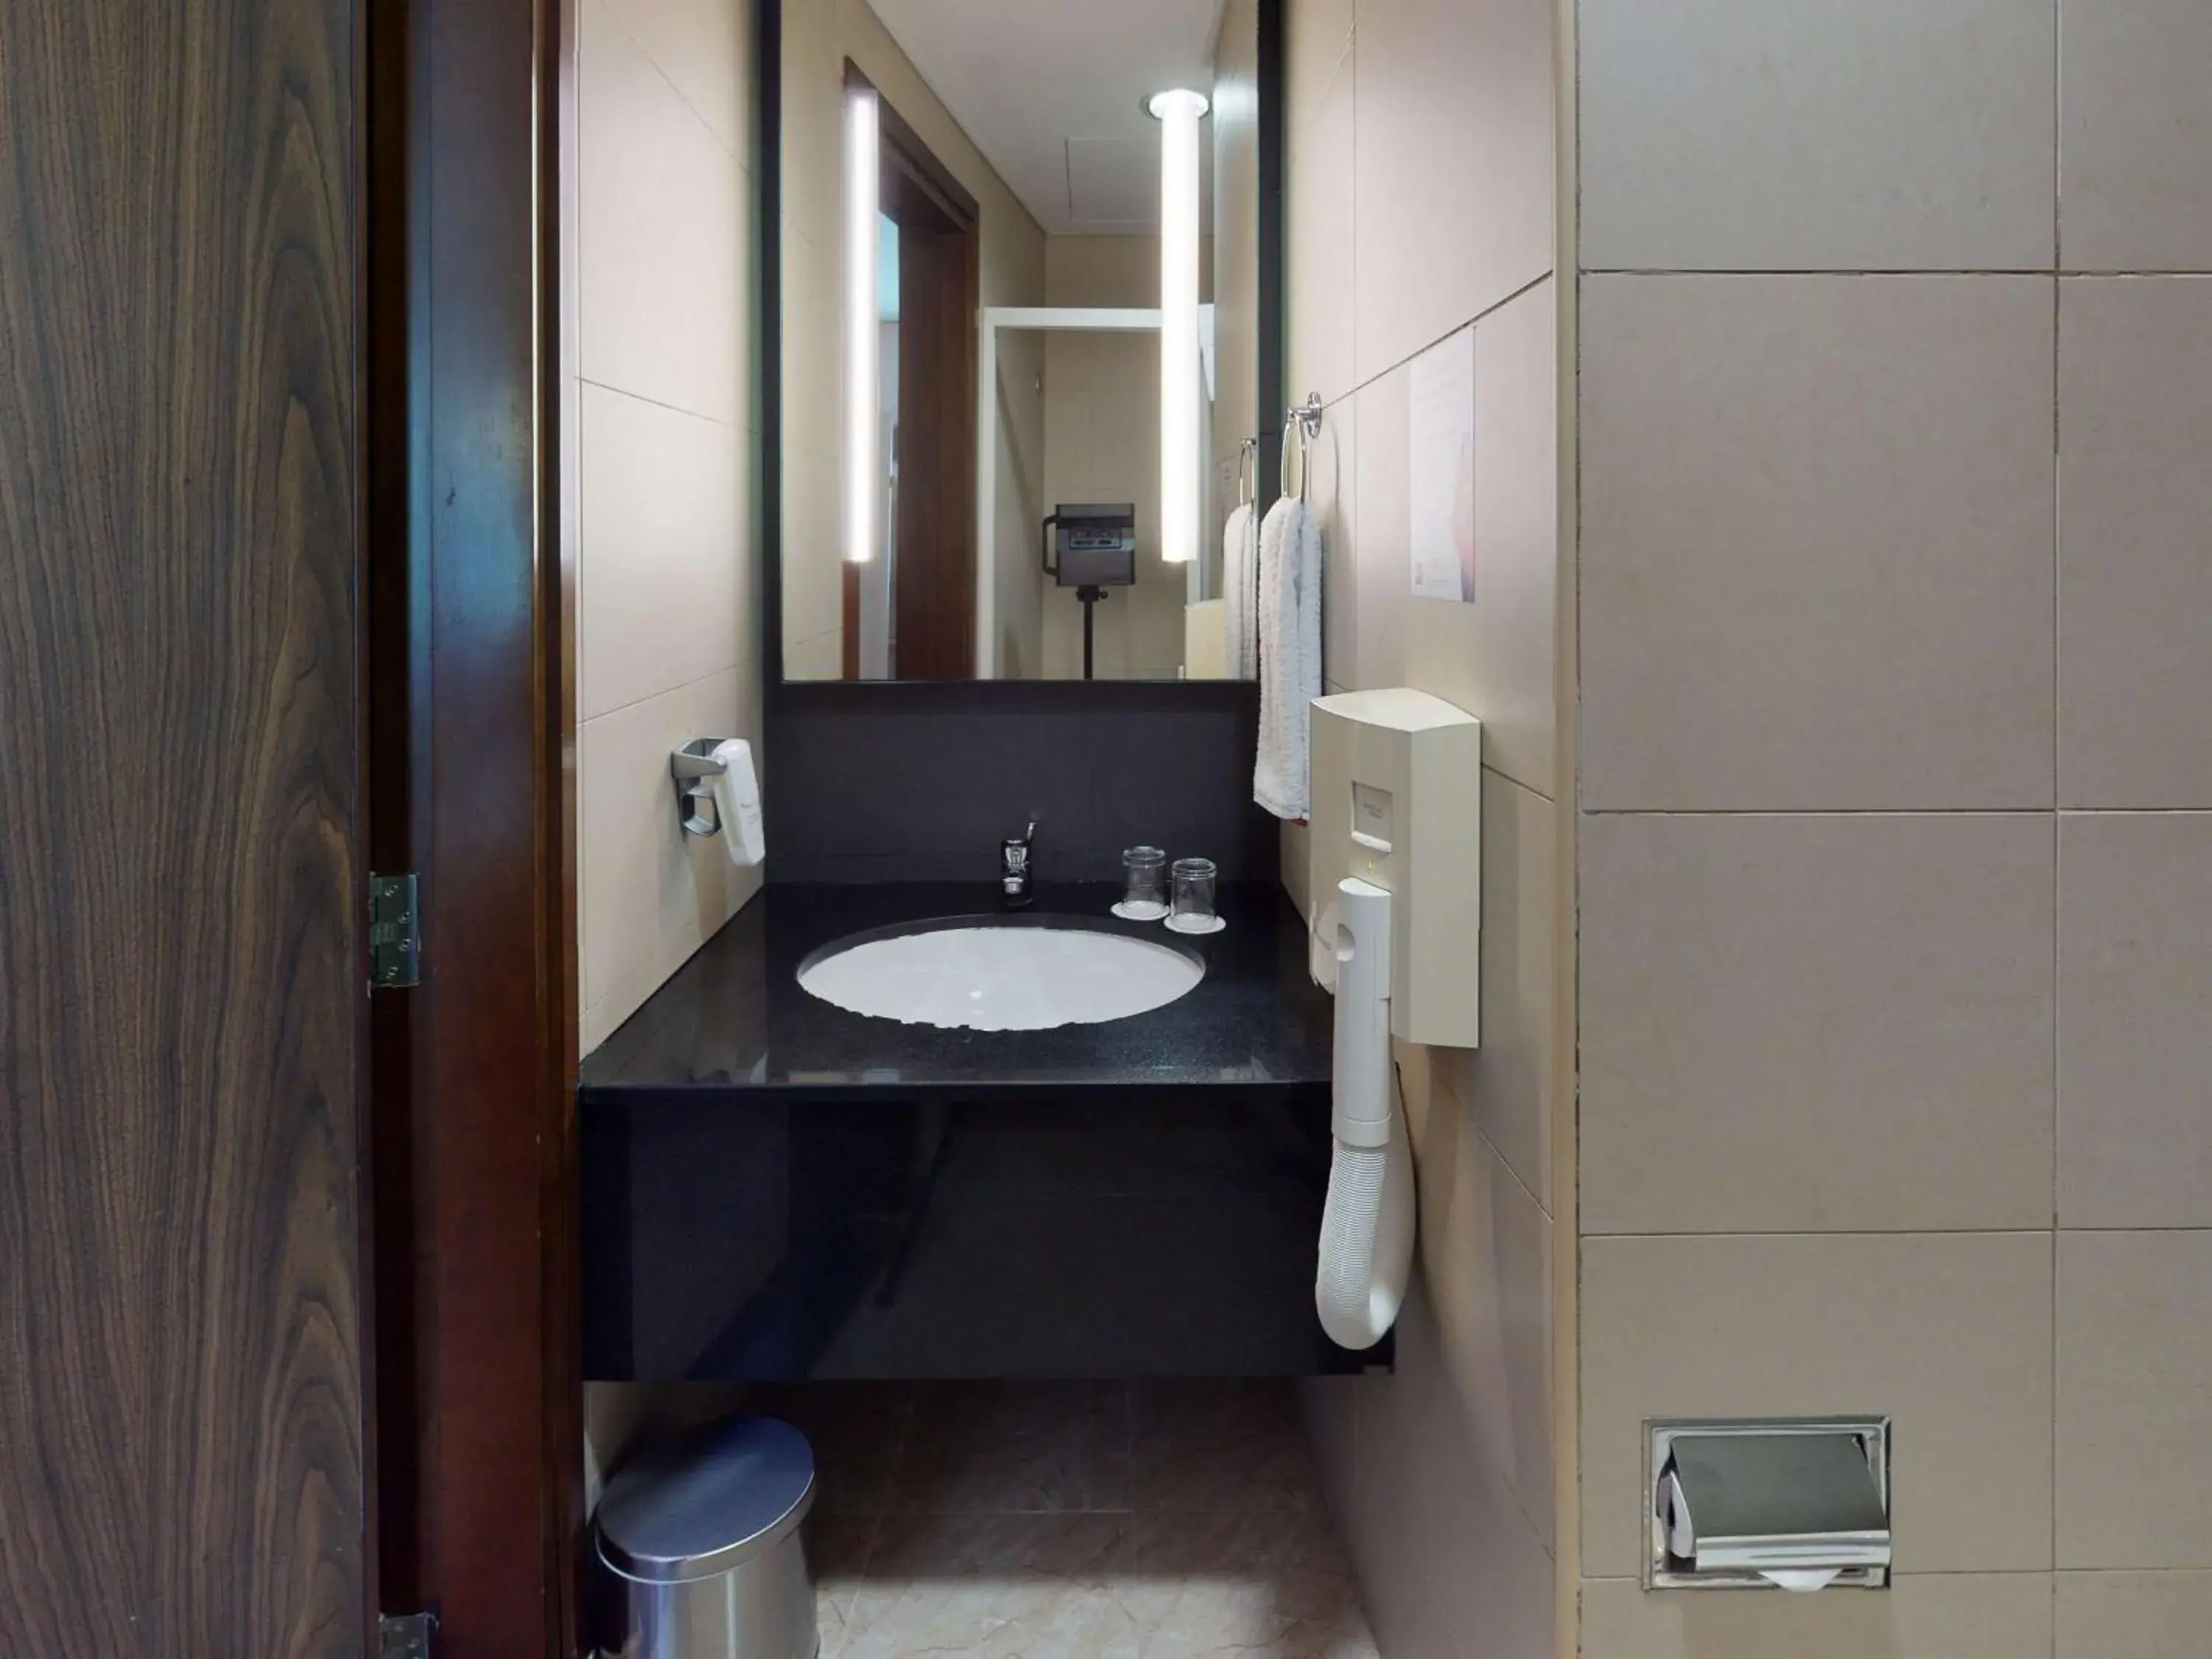 Photo of the whole room, Bathroom in Ibis Al Barsha